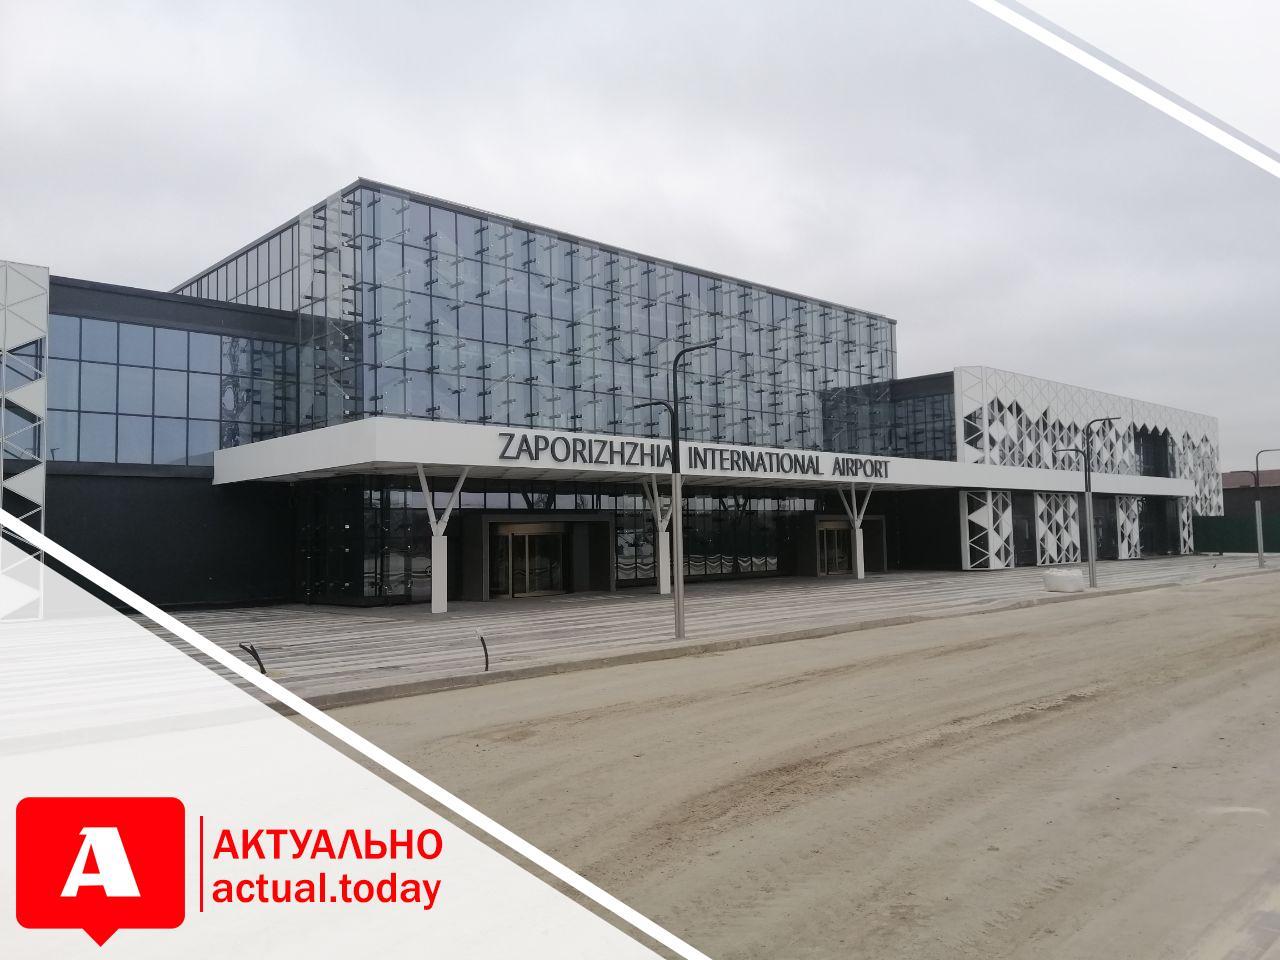 В запорожском аэропорту продолжается реконструкция: что будут делать и сколько потратят